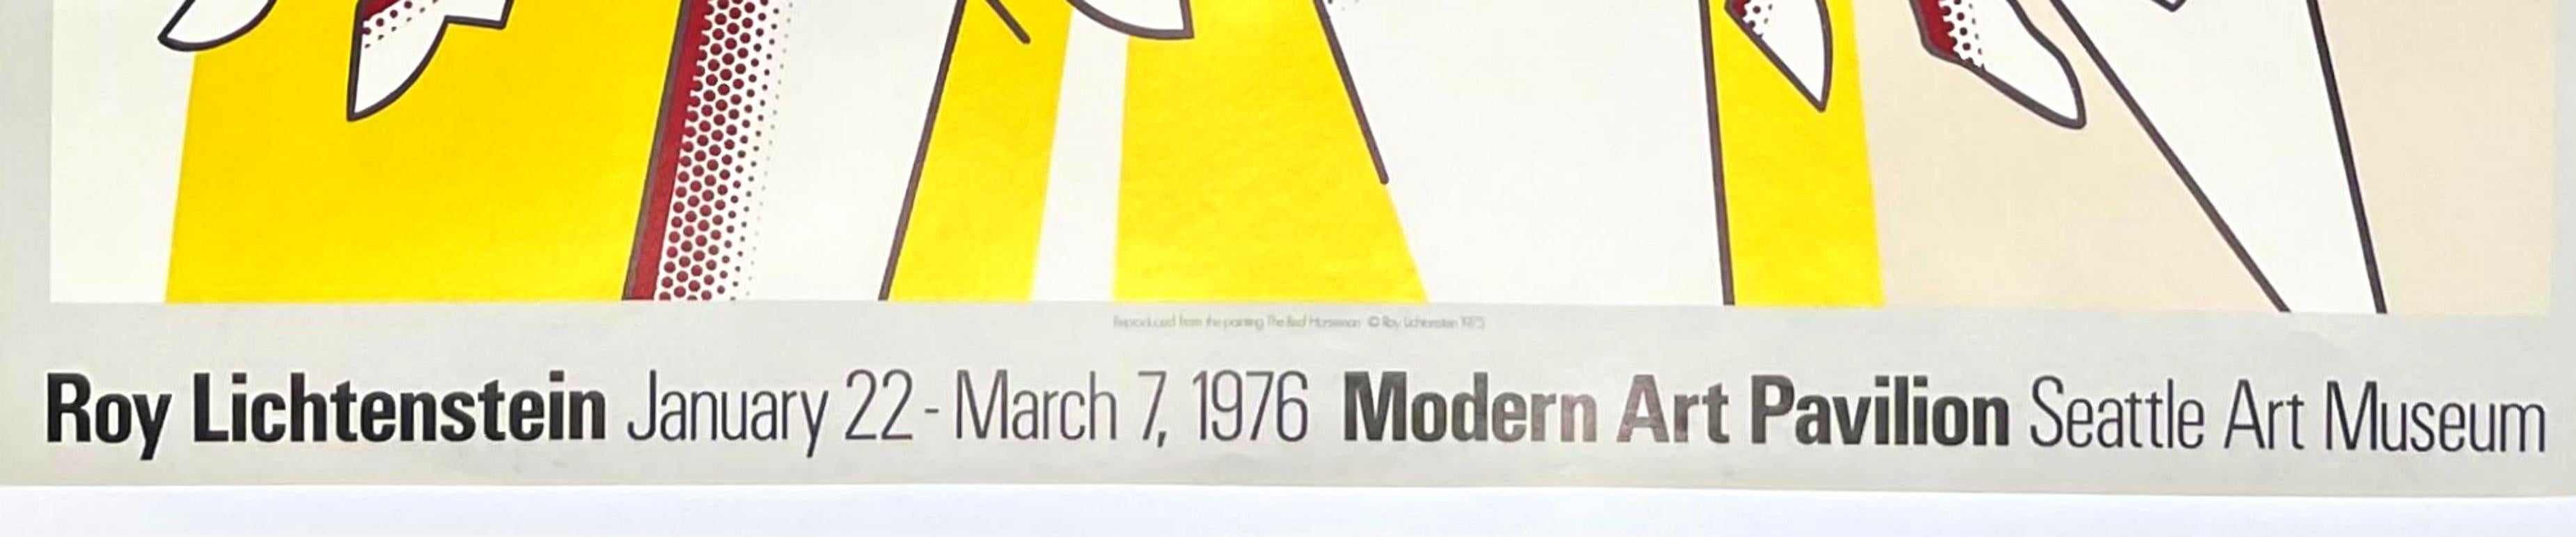 Roy Lichtenstein en el Pabellón de Arte Moderno del Museo de Arte de Seattle Póster de edición limitada, 1976
Litografía offset
Edición limitada de 1500 
22 1/2 × 28 pulgadas
Sin enmarcar
Este cartel litografía offset de edición limitada se publicó